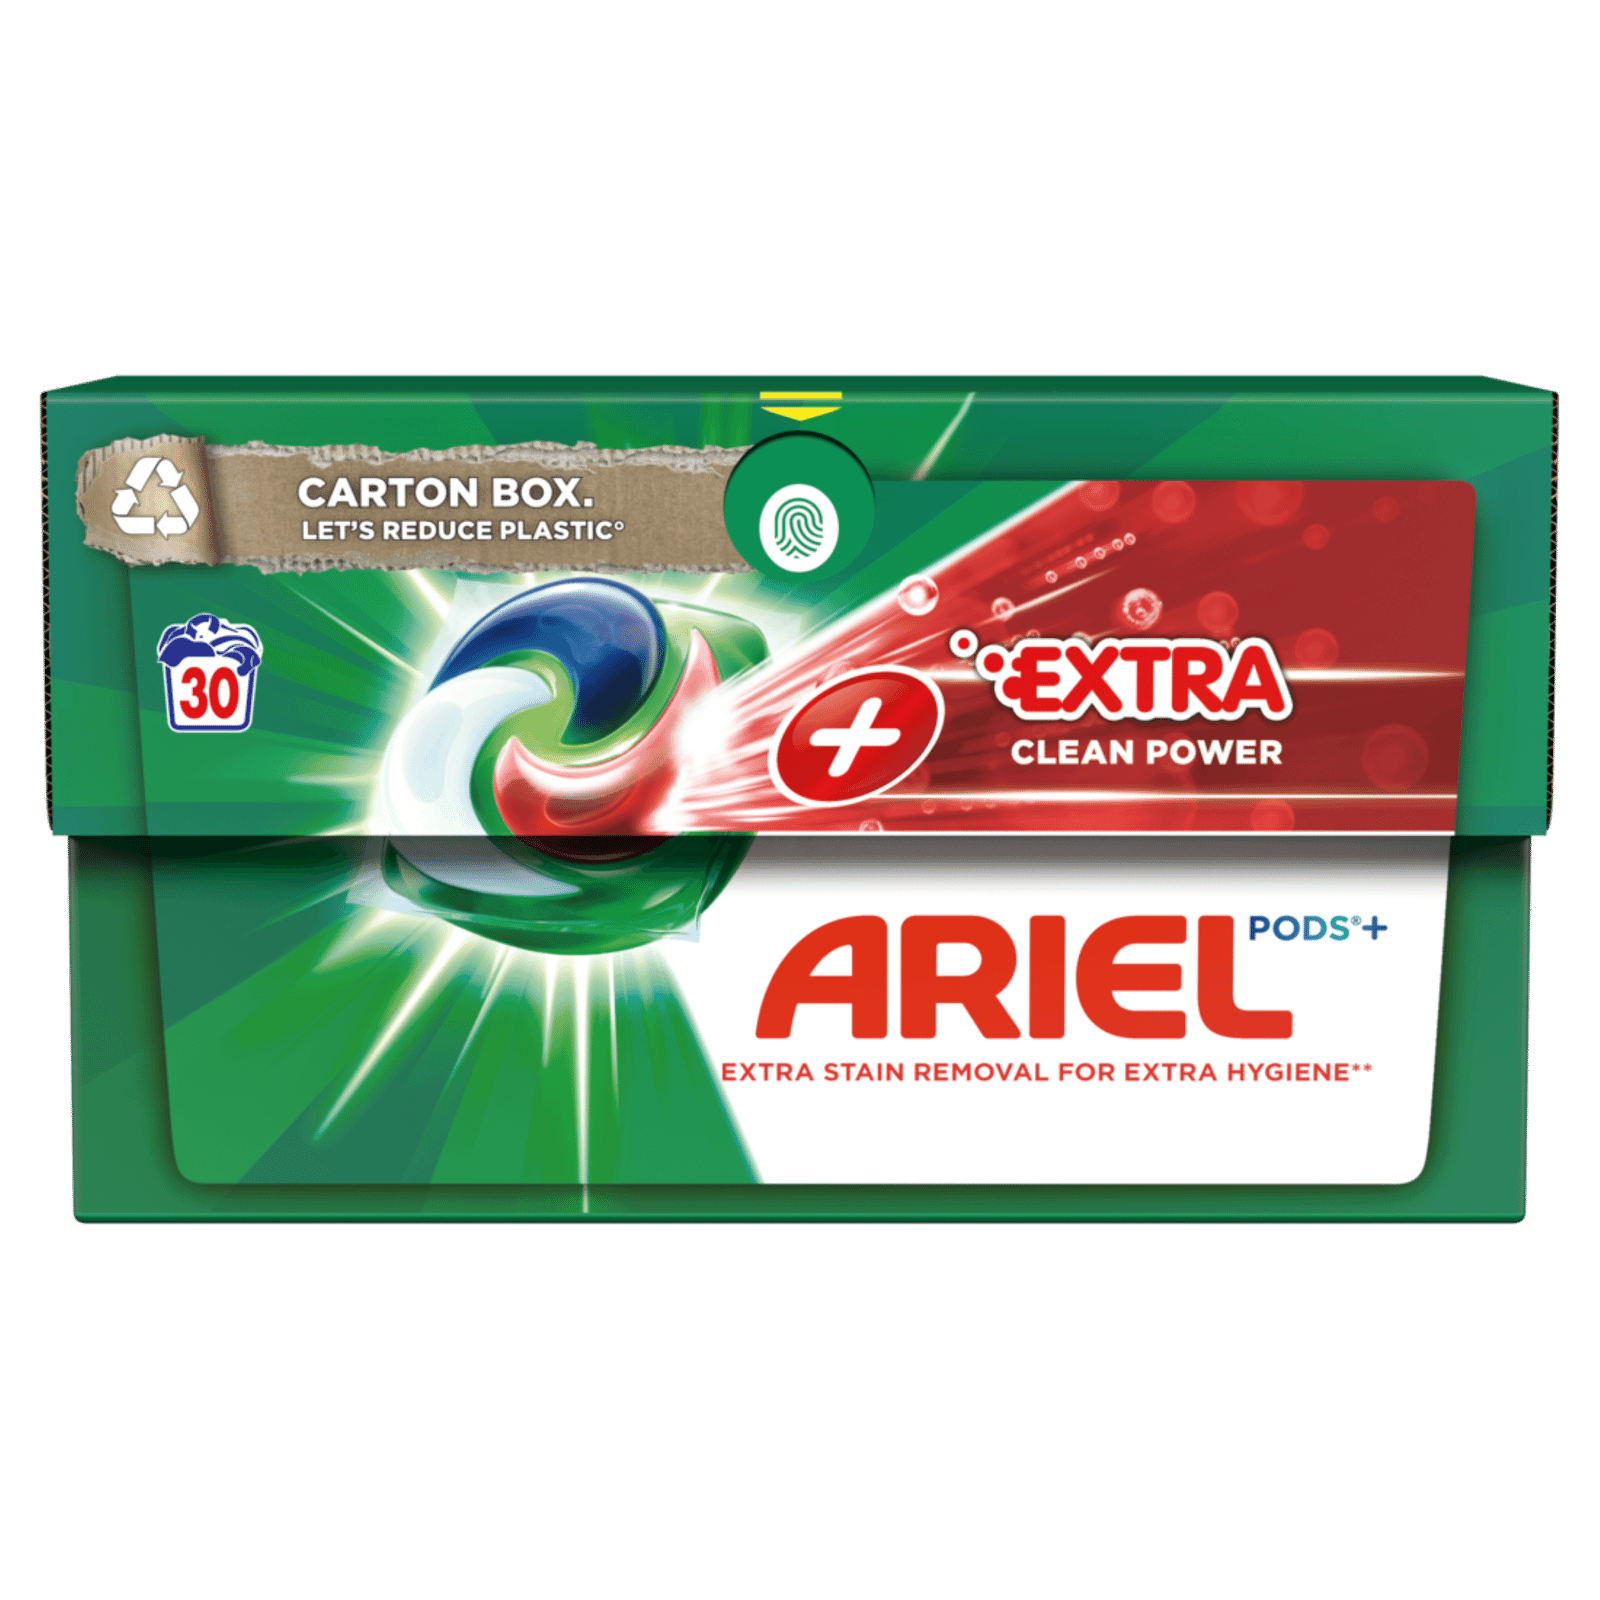 Капсули для прання Ariel PODS+ Сила Екстраочищення - 1